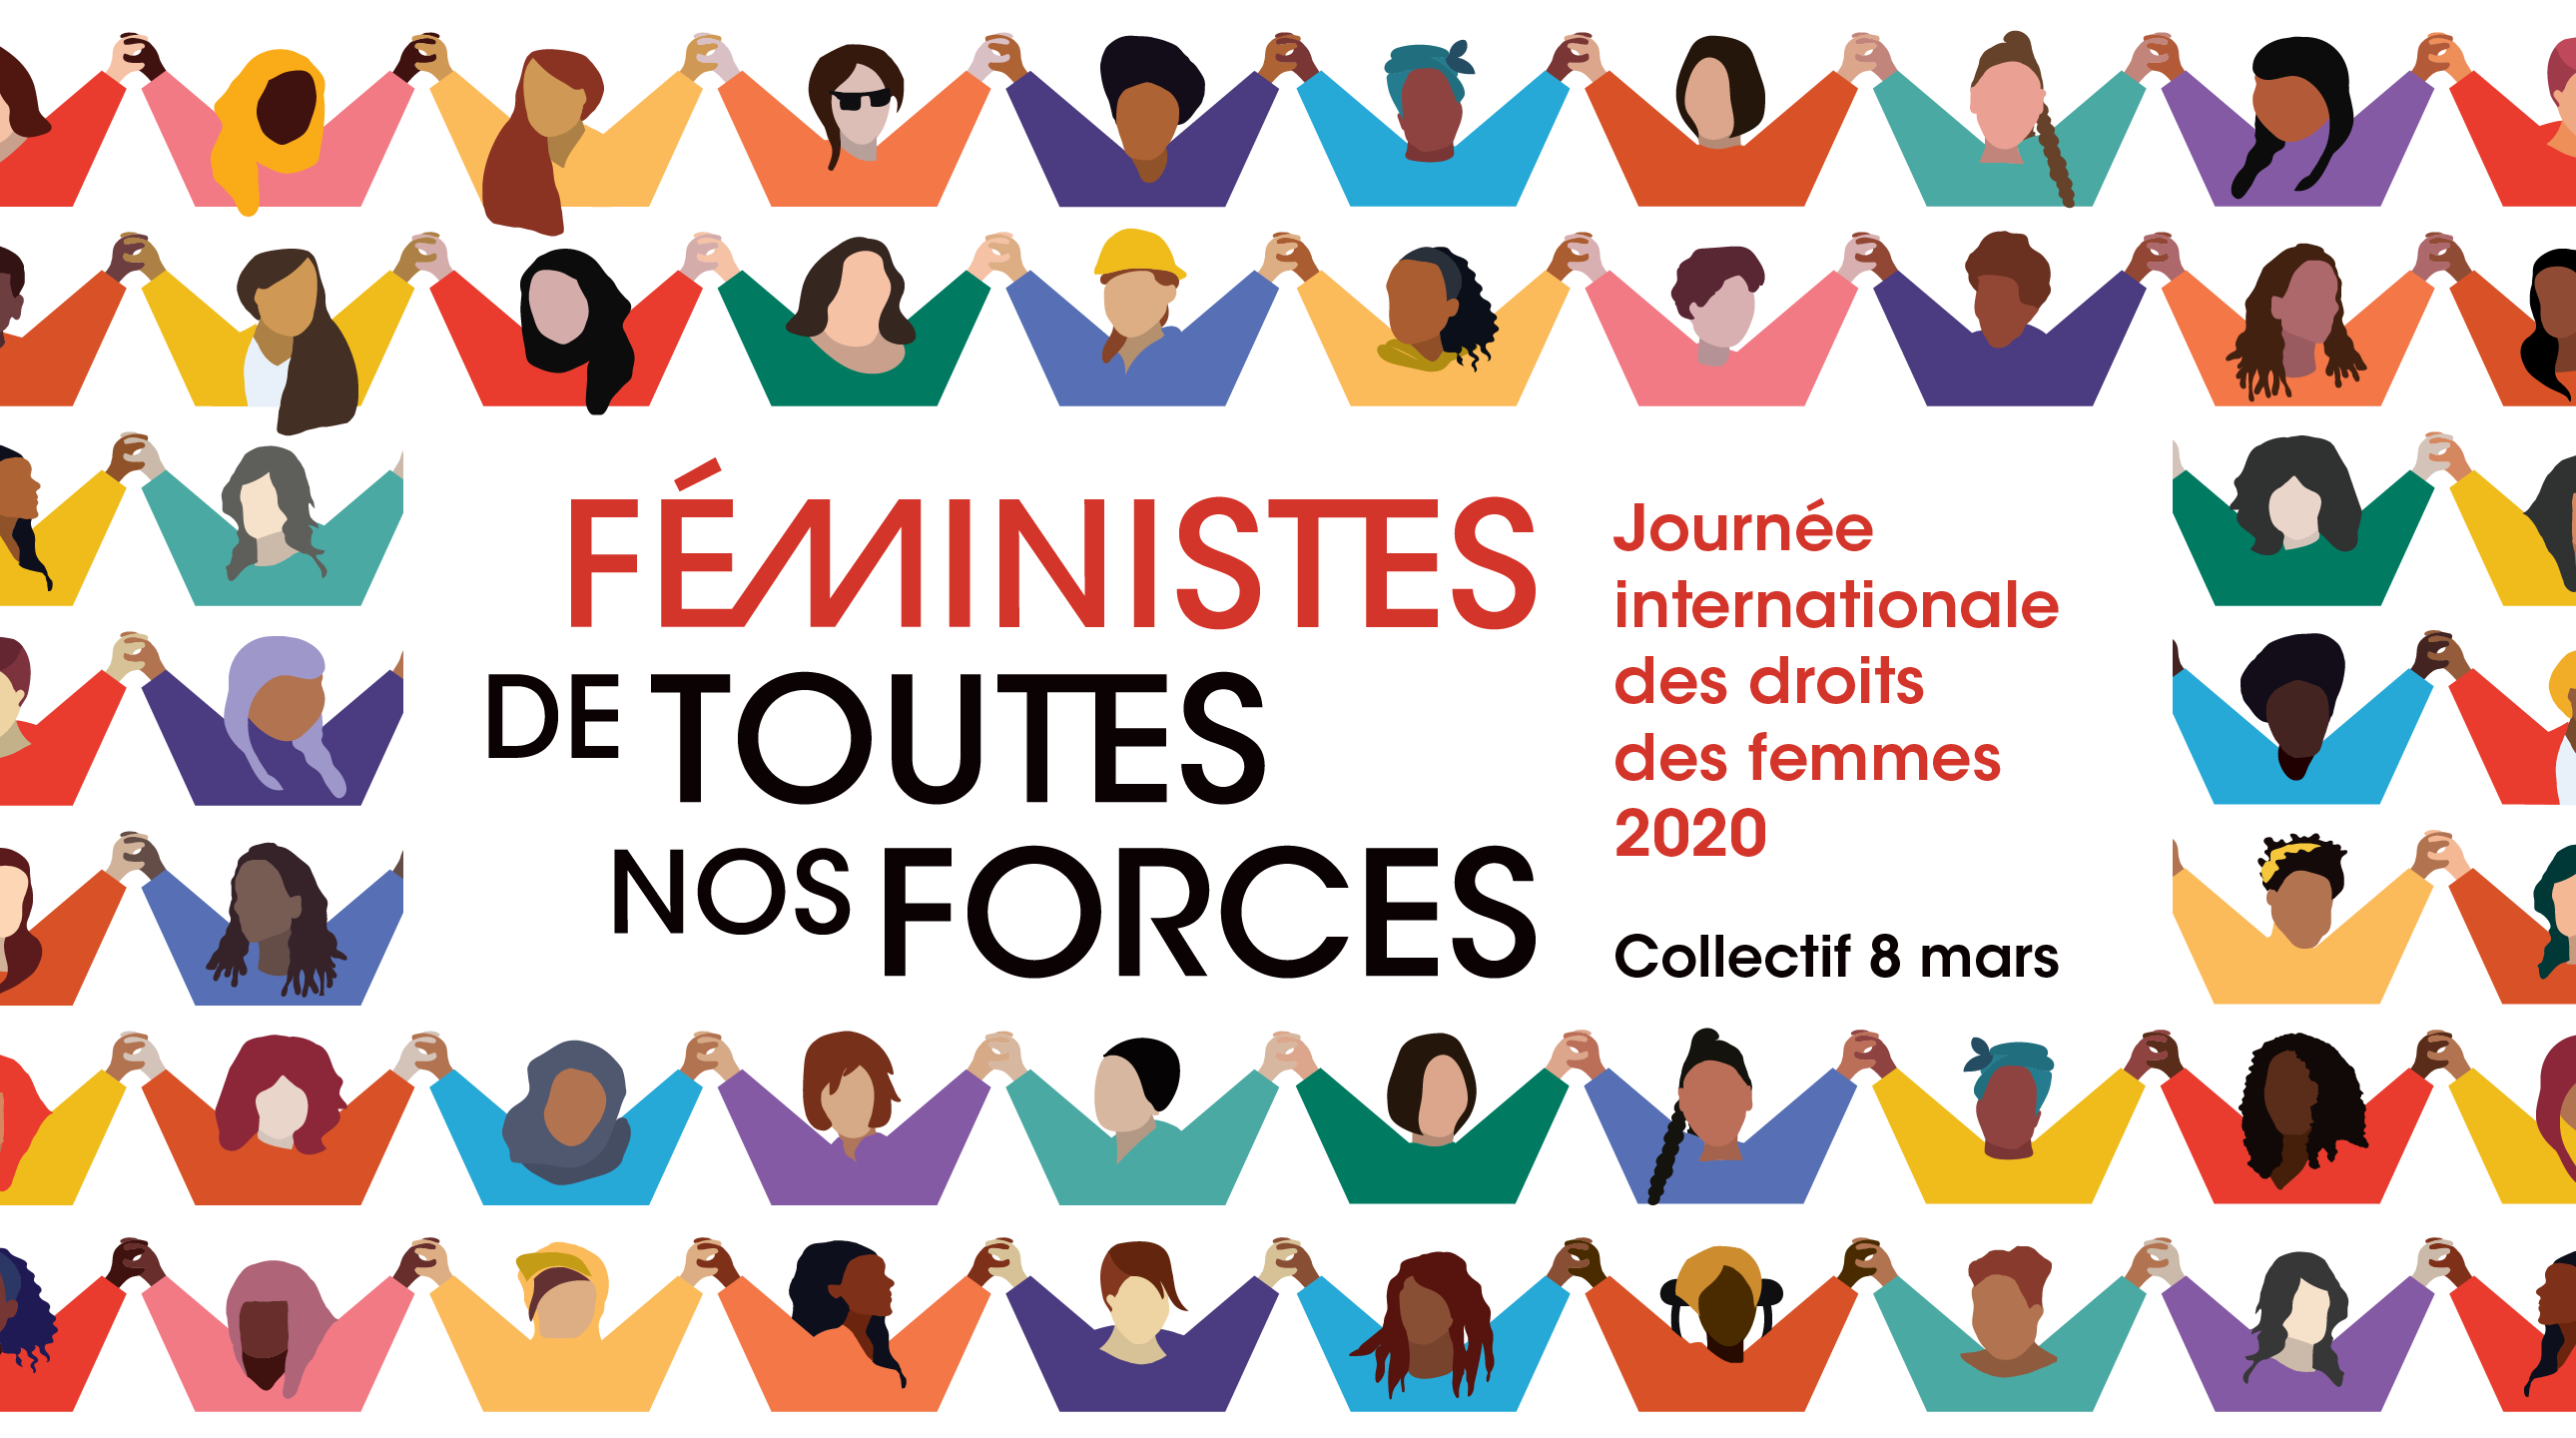 Féministes de toutes nos forces  – Journée internationale des droits des femmes 2020 – Collectif 8 mars